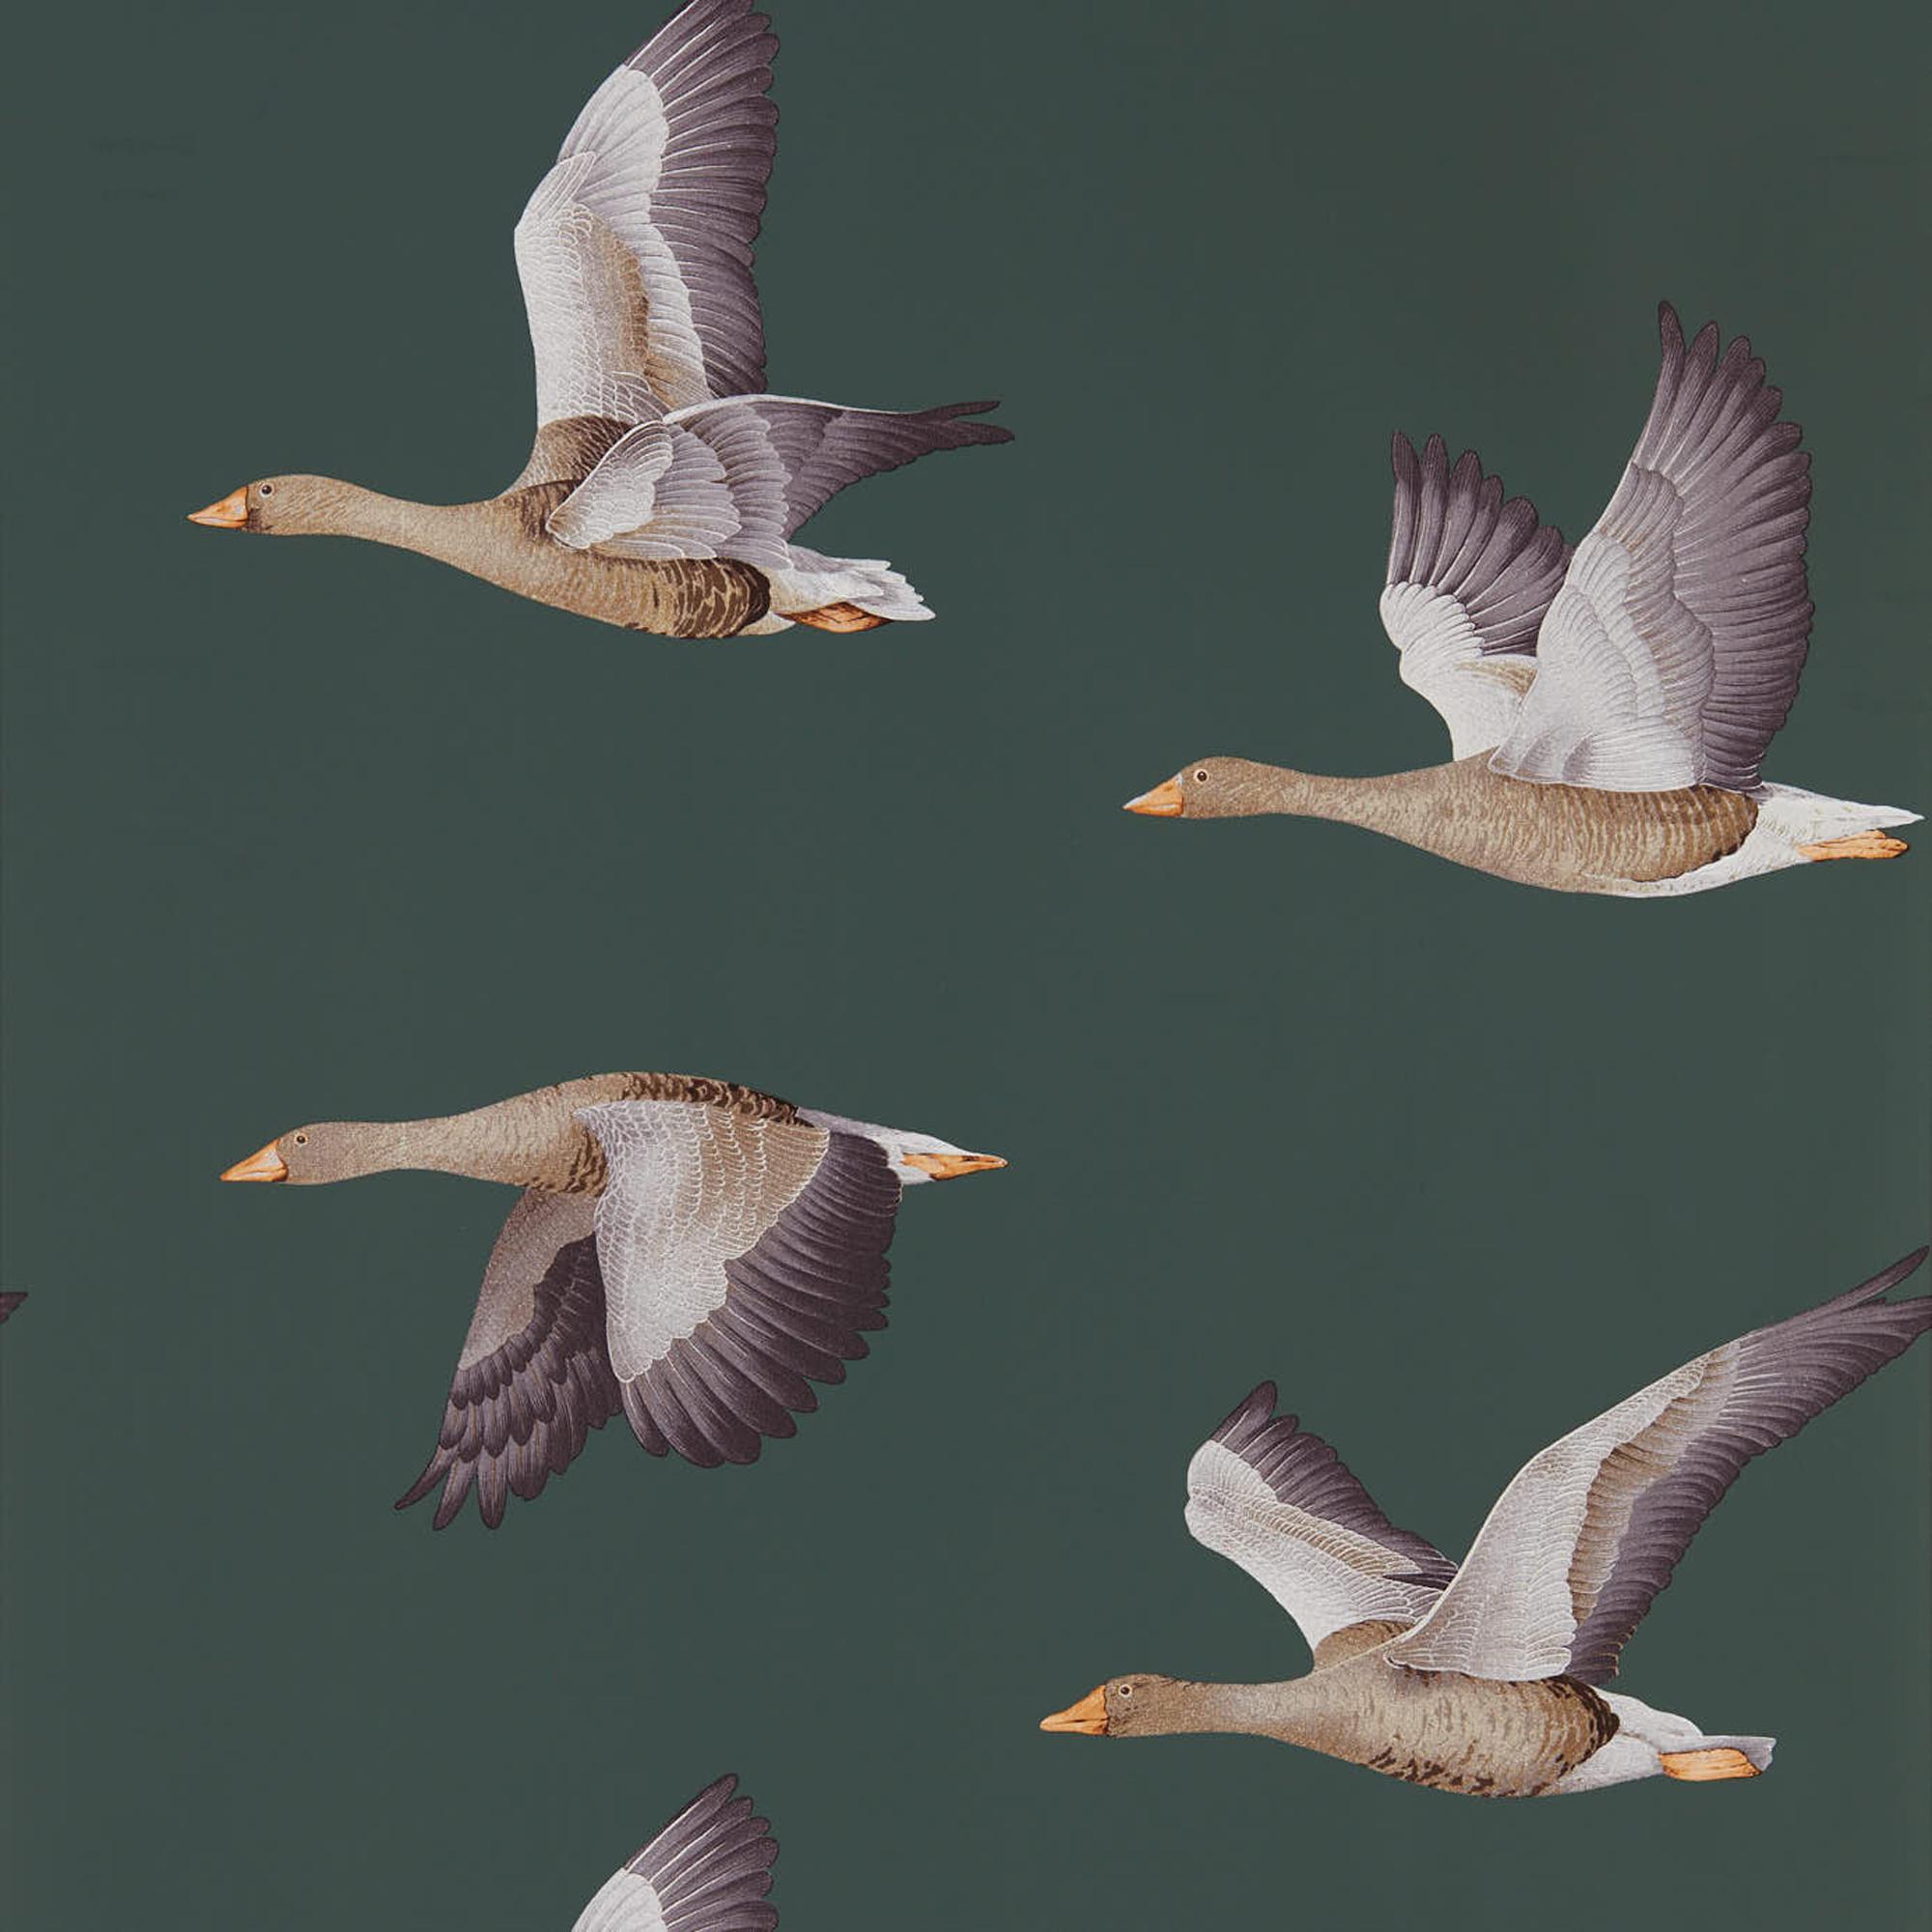 サンダーソン壁紙クリアランス,鳥,水鳥,羽,鳥の渡り,野生動物